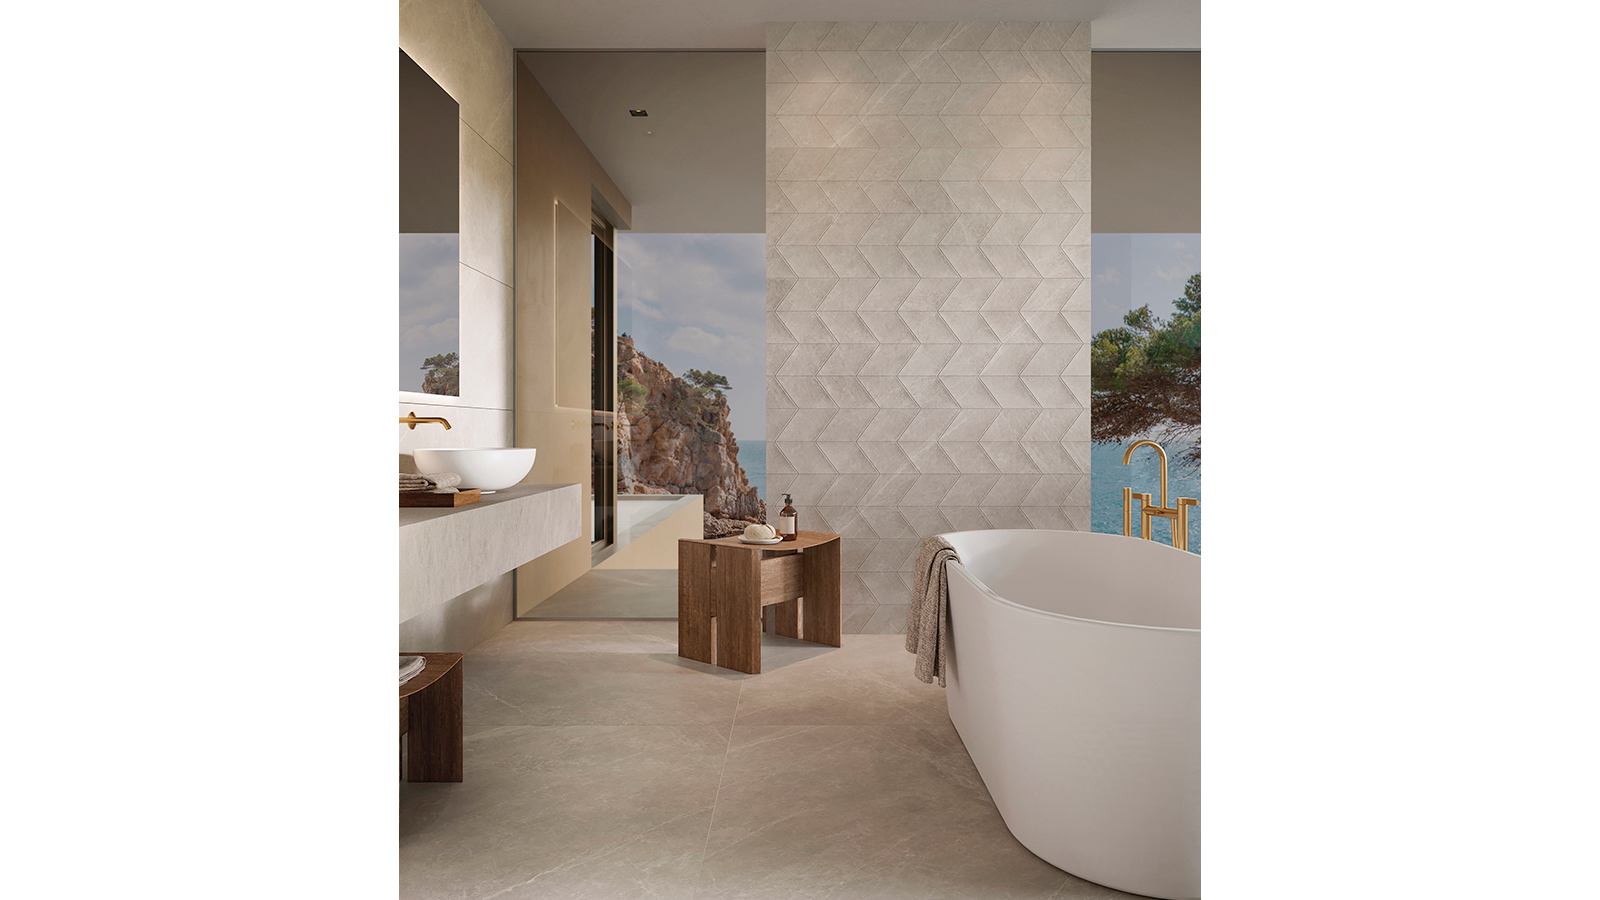 Aseo y ducha higiénica en el baño con azulejos de cerámica en colores  naturales